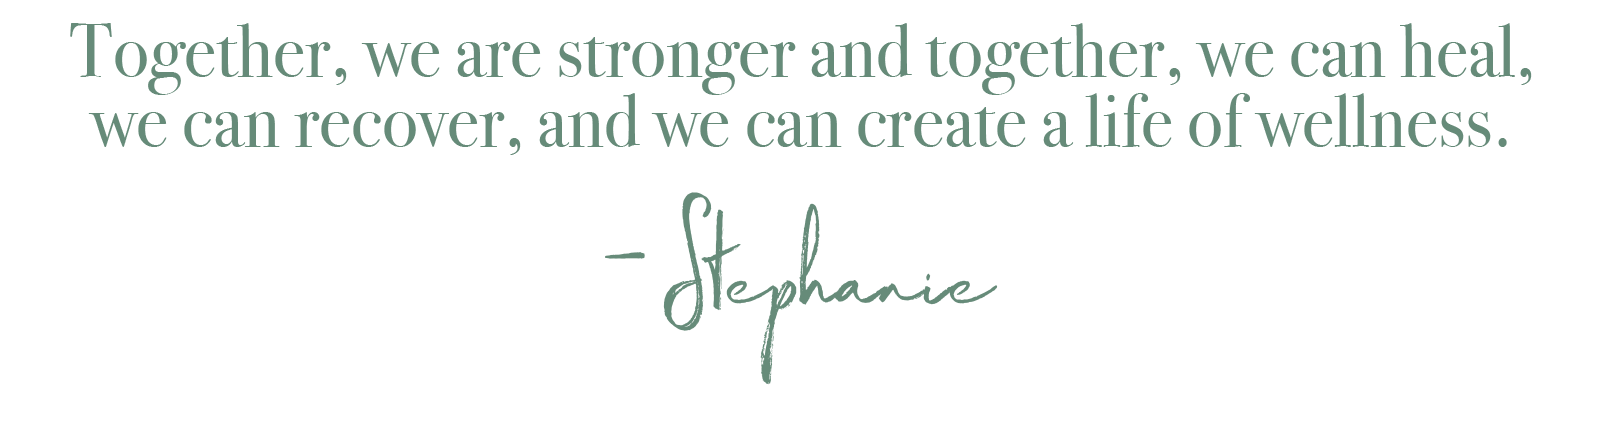 Together Stronger